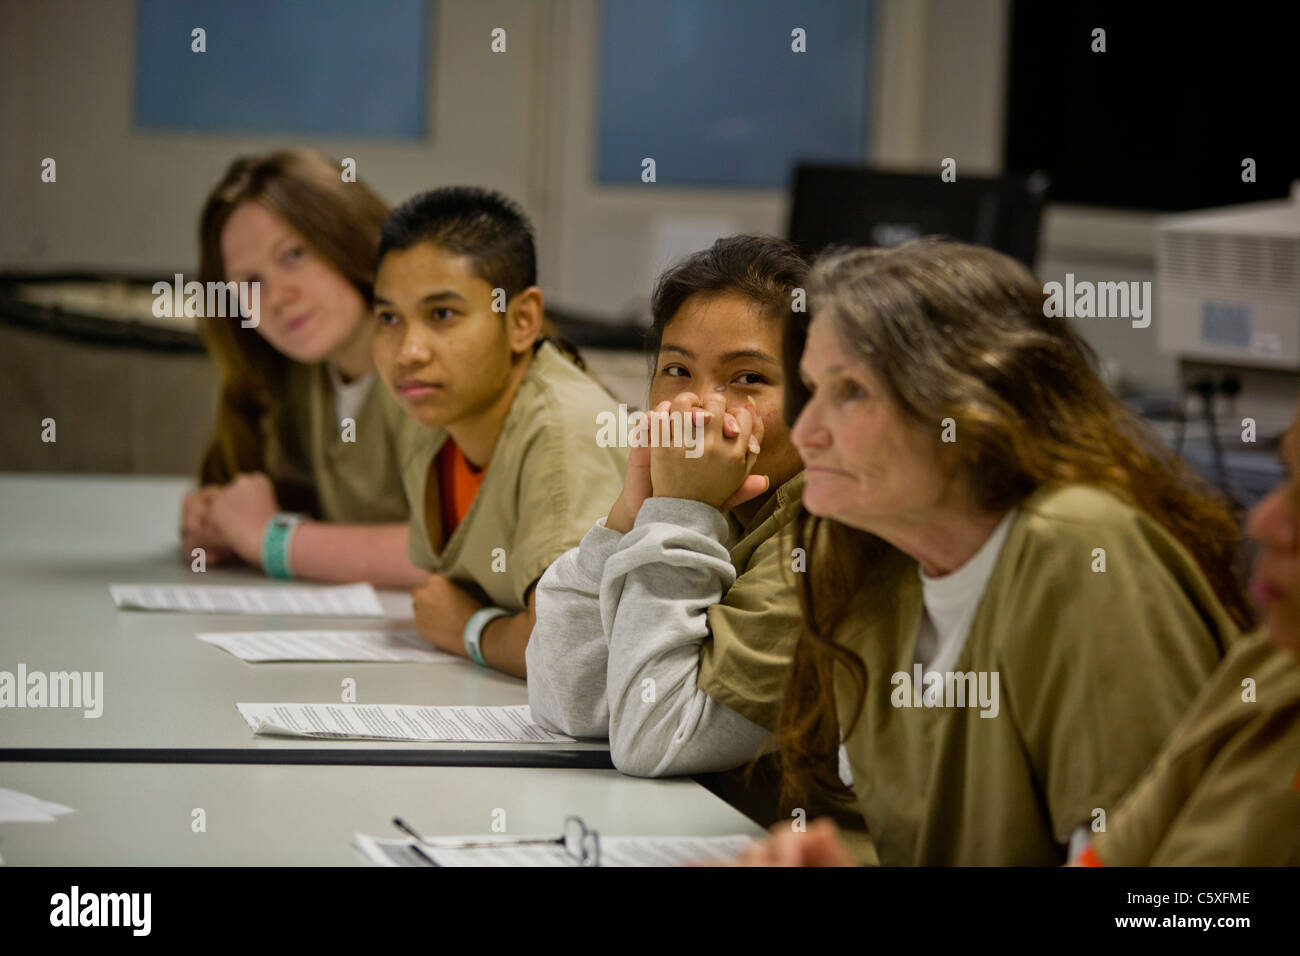 Détenus de la prison des femmes en uniforme participent à un séminaire de traitement de la toxicomanie à Santa Ana, CA. Remarque variété d'âges et de races. Banque D'Images